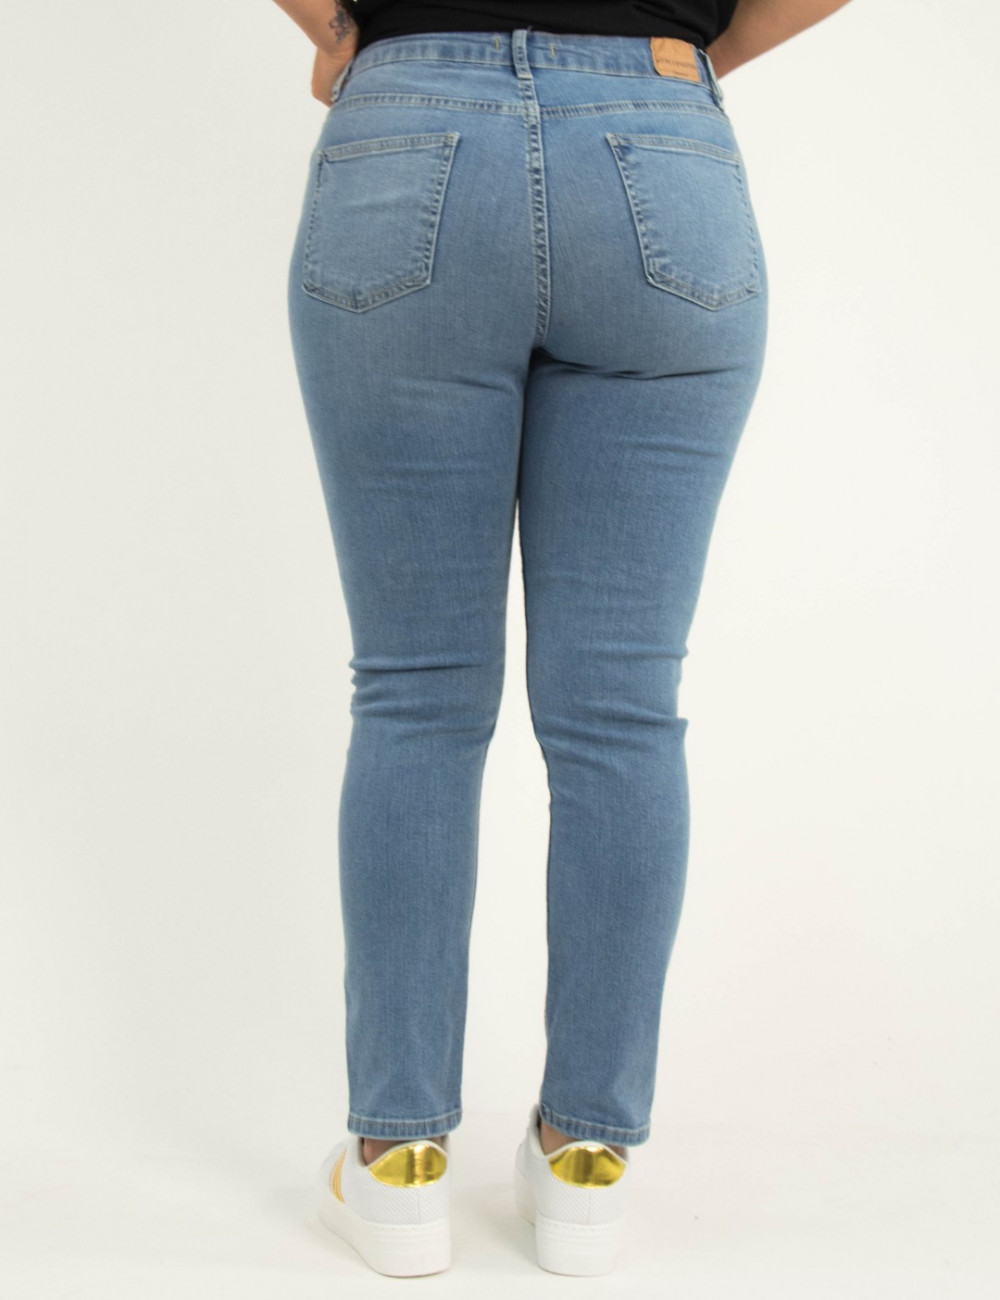 Γυναικείο μπλε ελαστικό τζιν παντελόνι σωλήνας Plus Size 5721